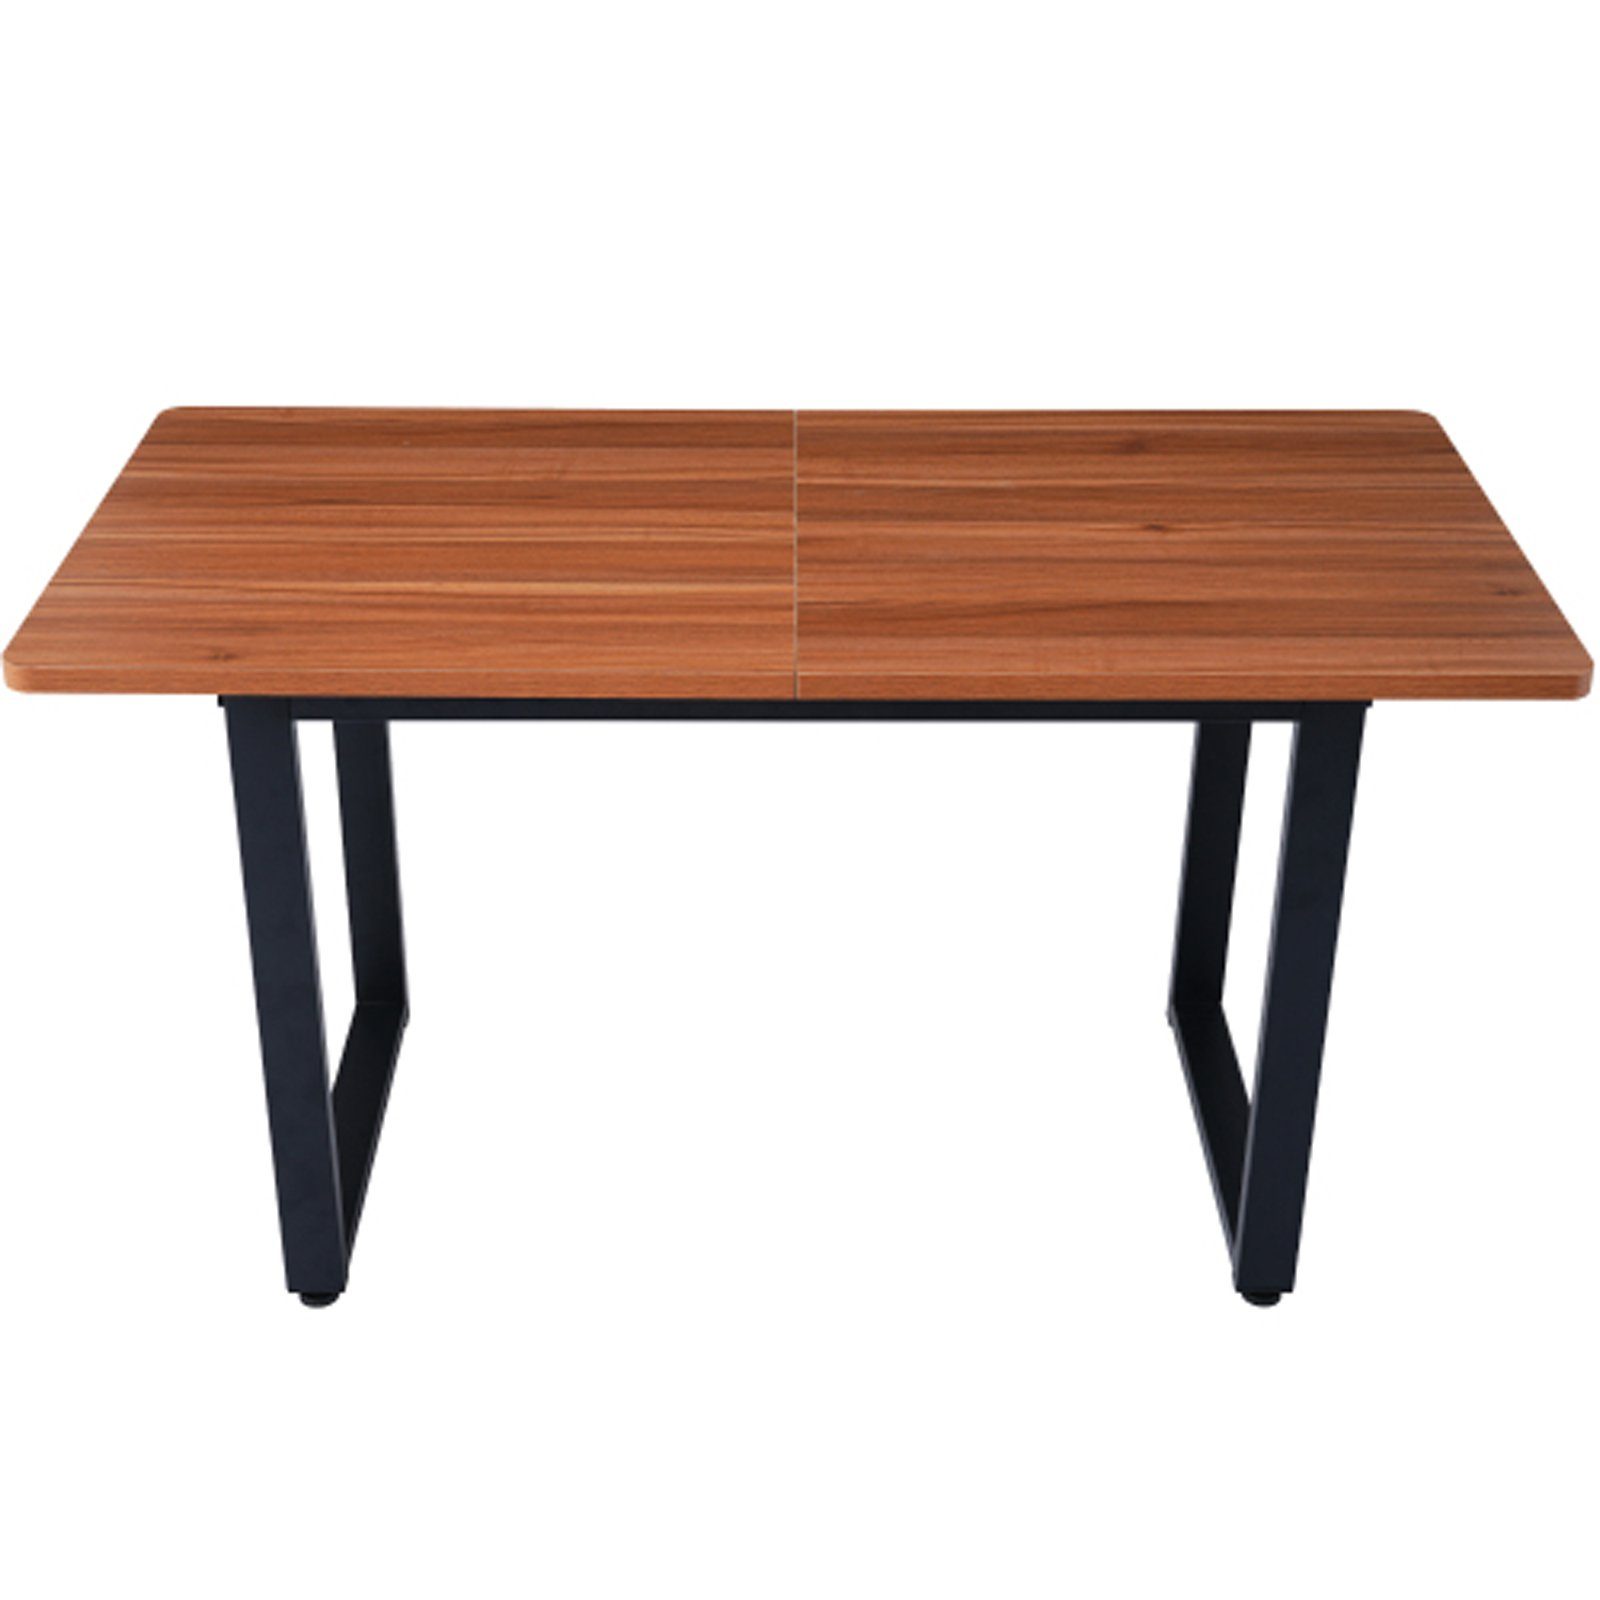 Stahl und Tisch Esstisch SEEZSSA Braun aus ausziehbarer holz, 140x70cm Holz Industriestil,esstisch Kaffee-Freizeittisch Küchenstuhl (Esszimmerestuhl), Hochwertigem